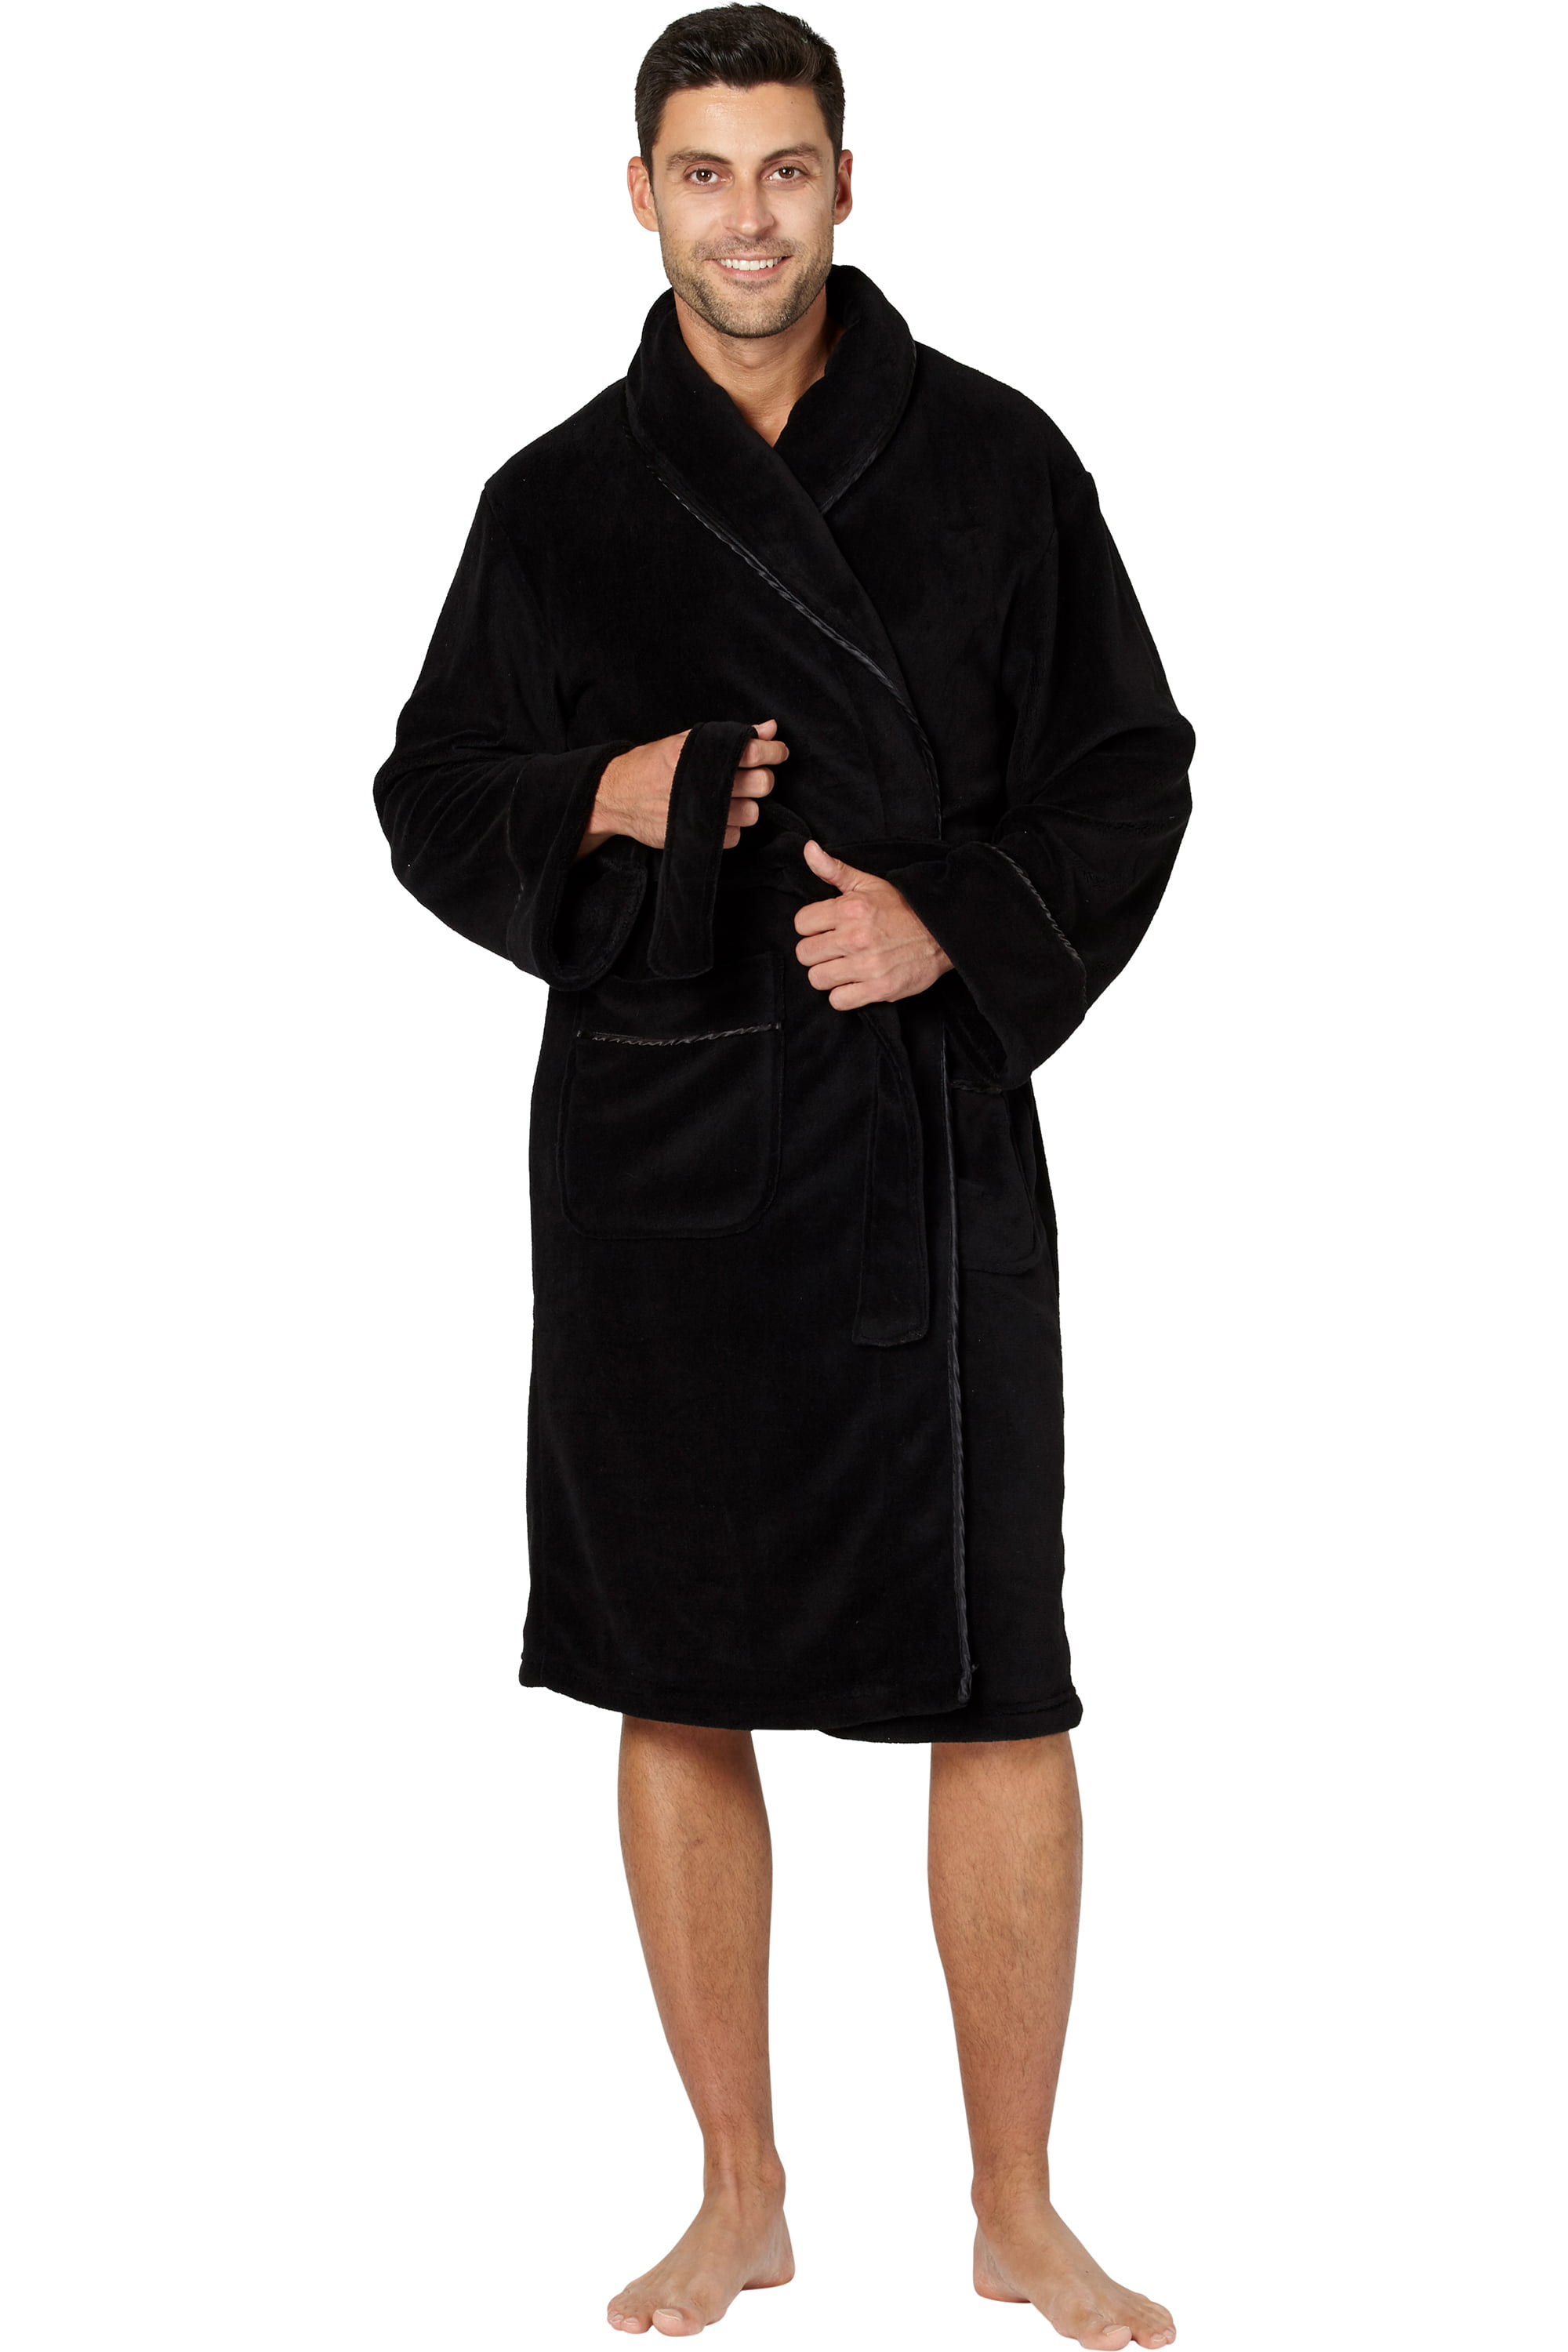 Max Deco - Men's Solid Plush Robe - Walmart.com - Walmart.com